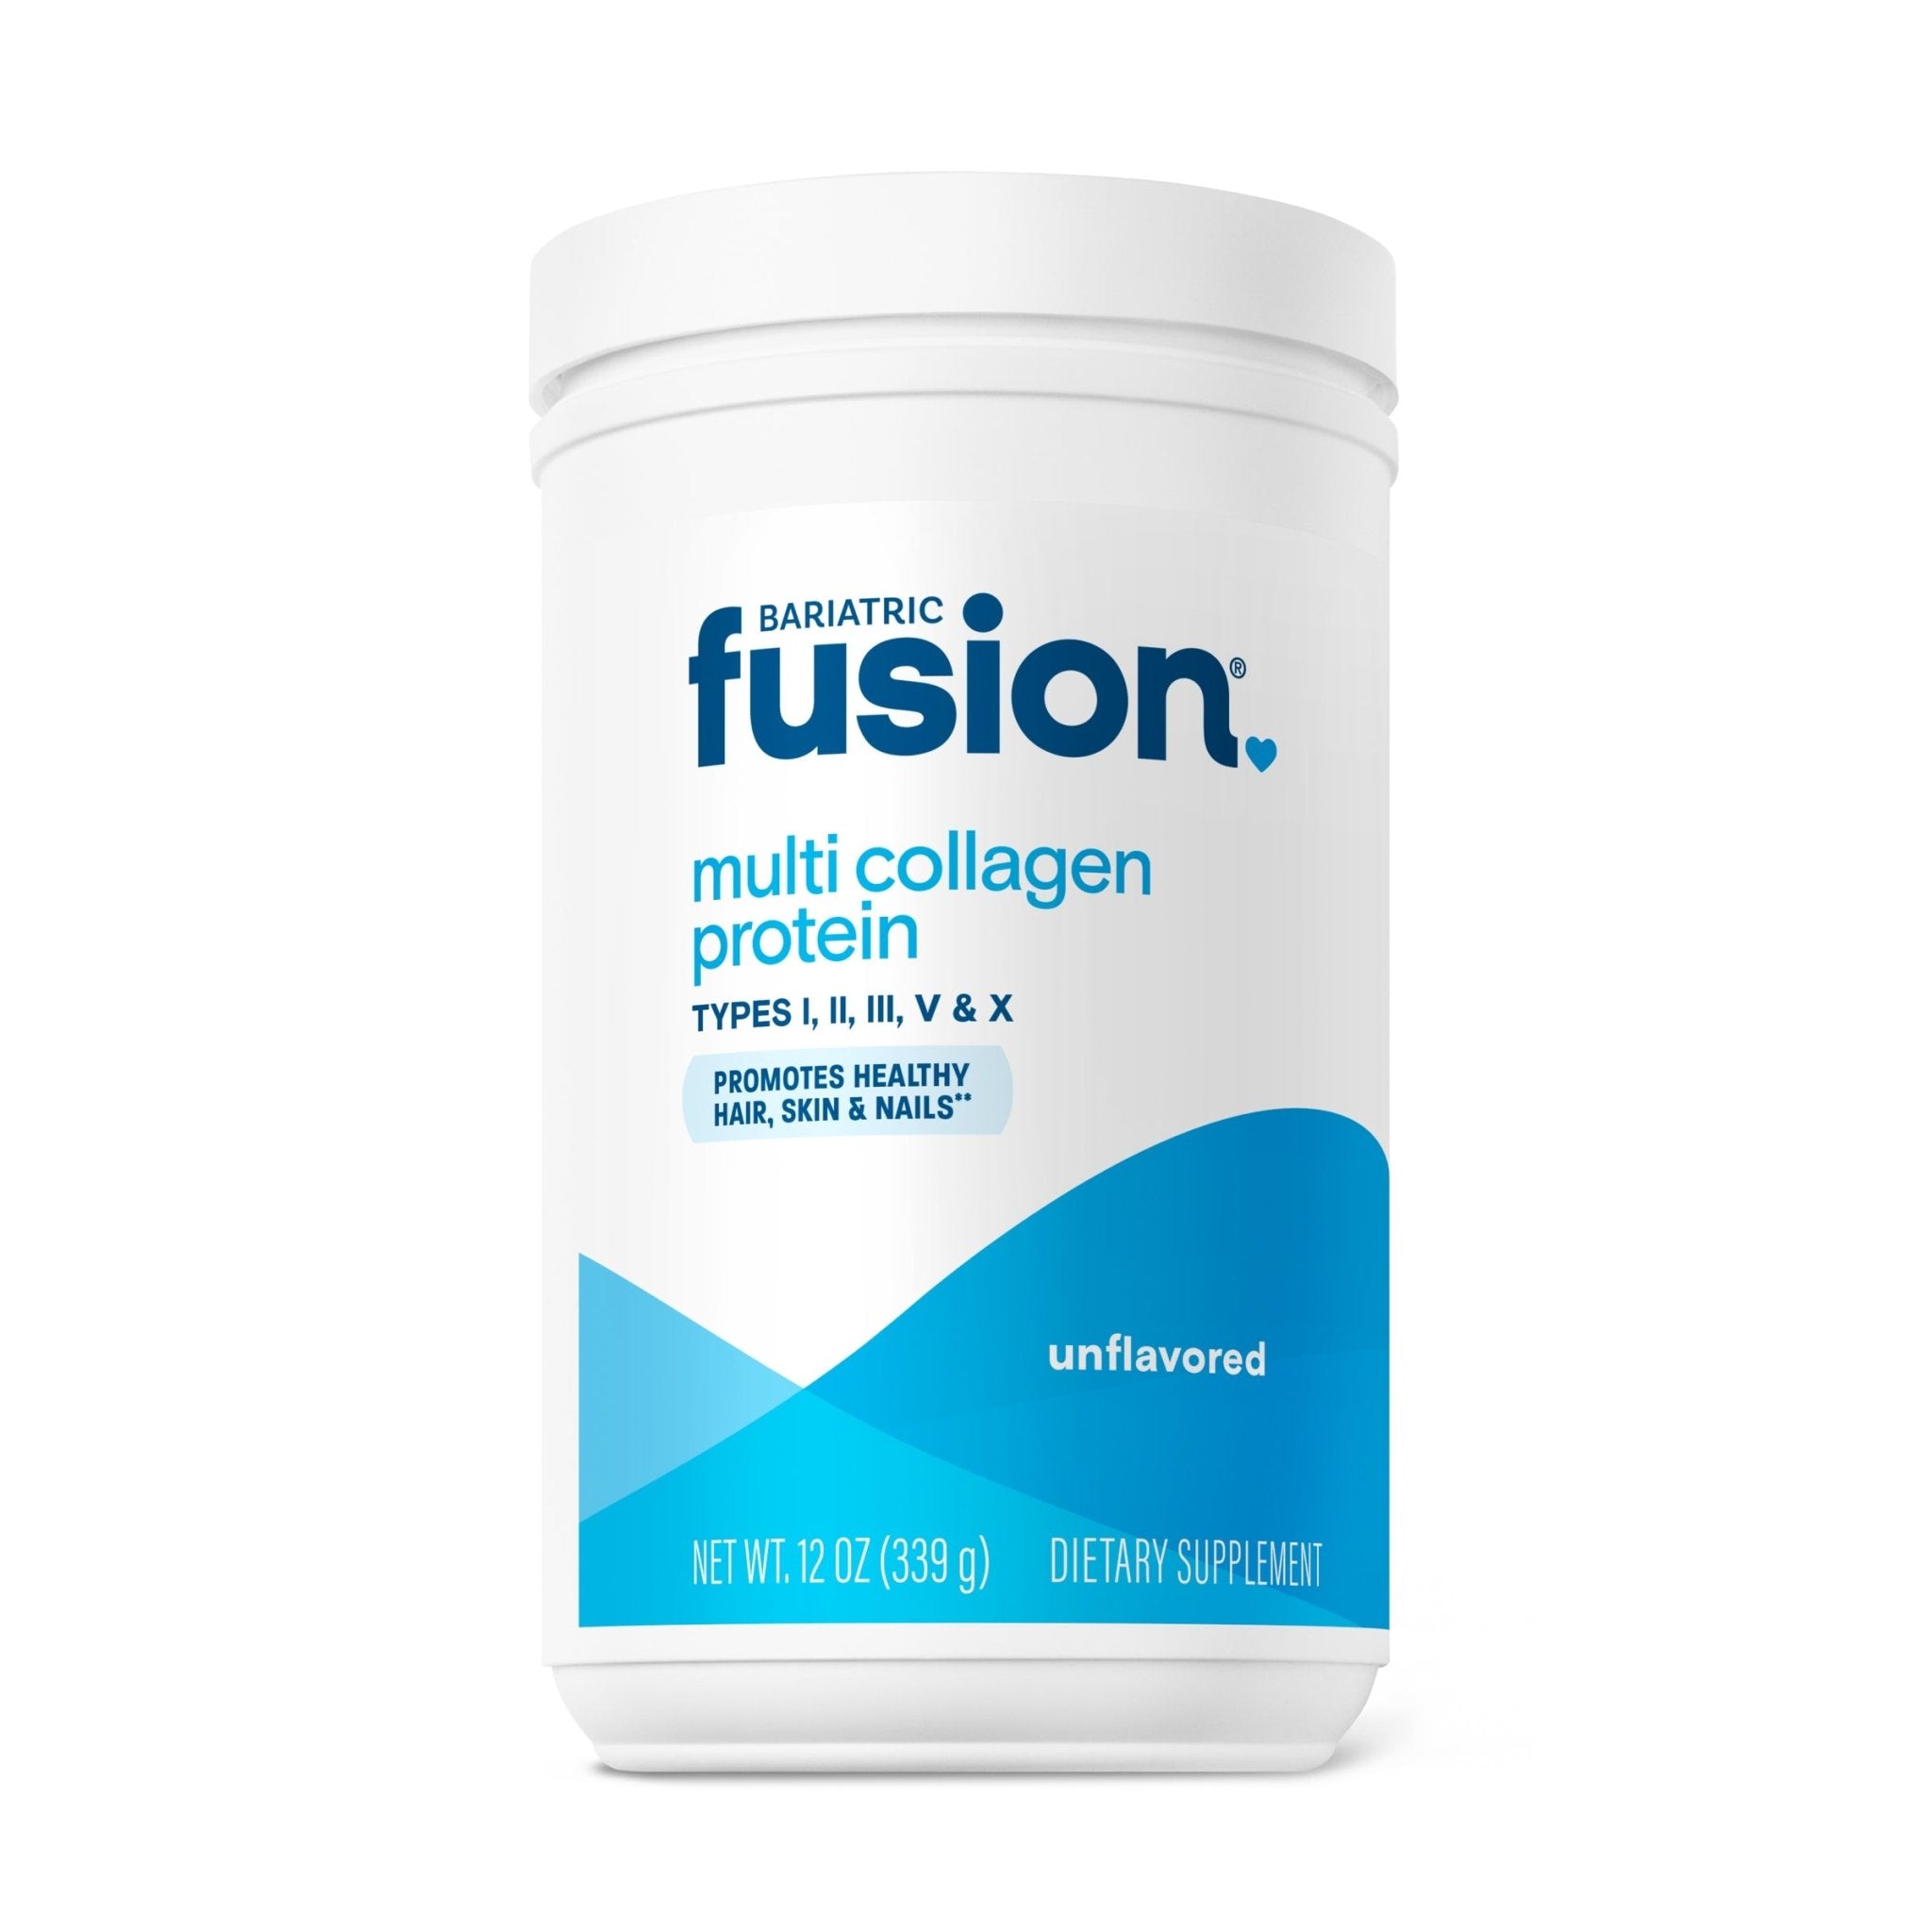 Unflavored Multi Collagen Protein Powder